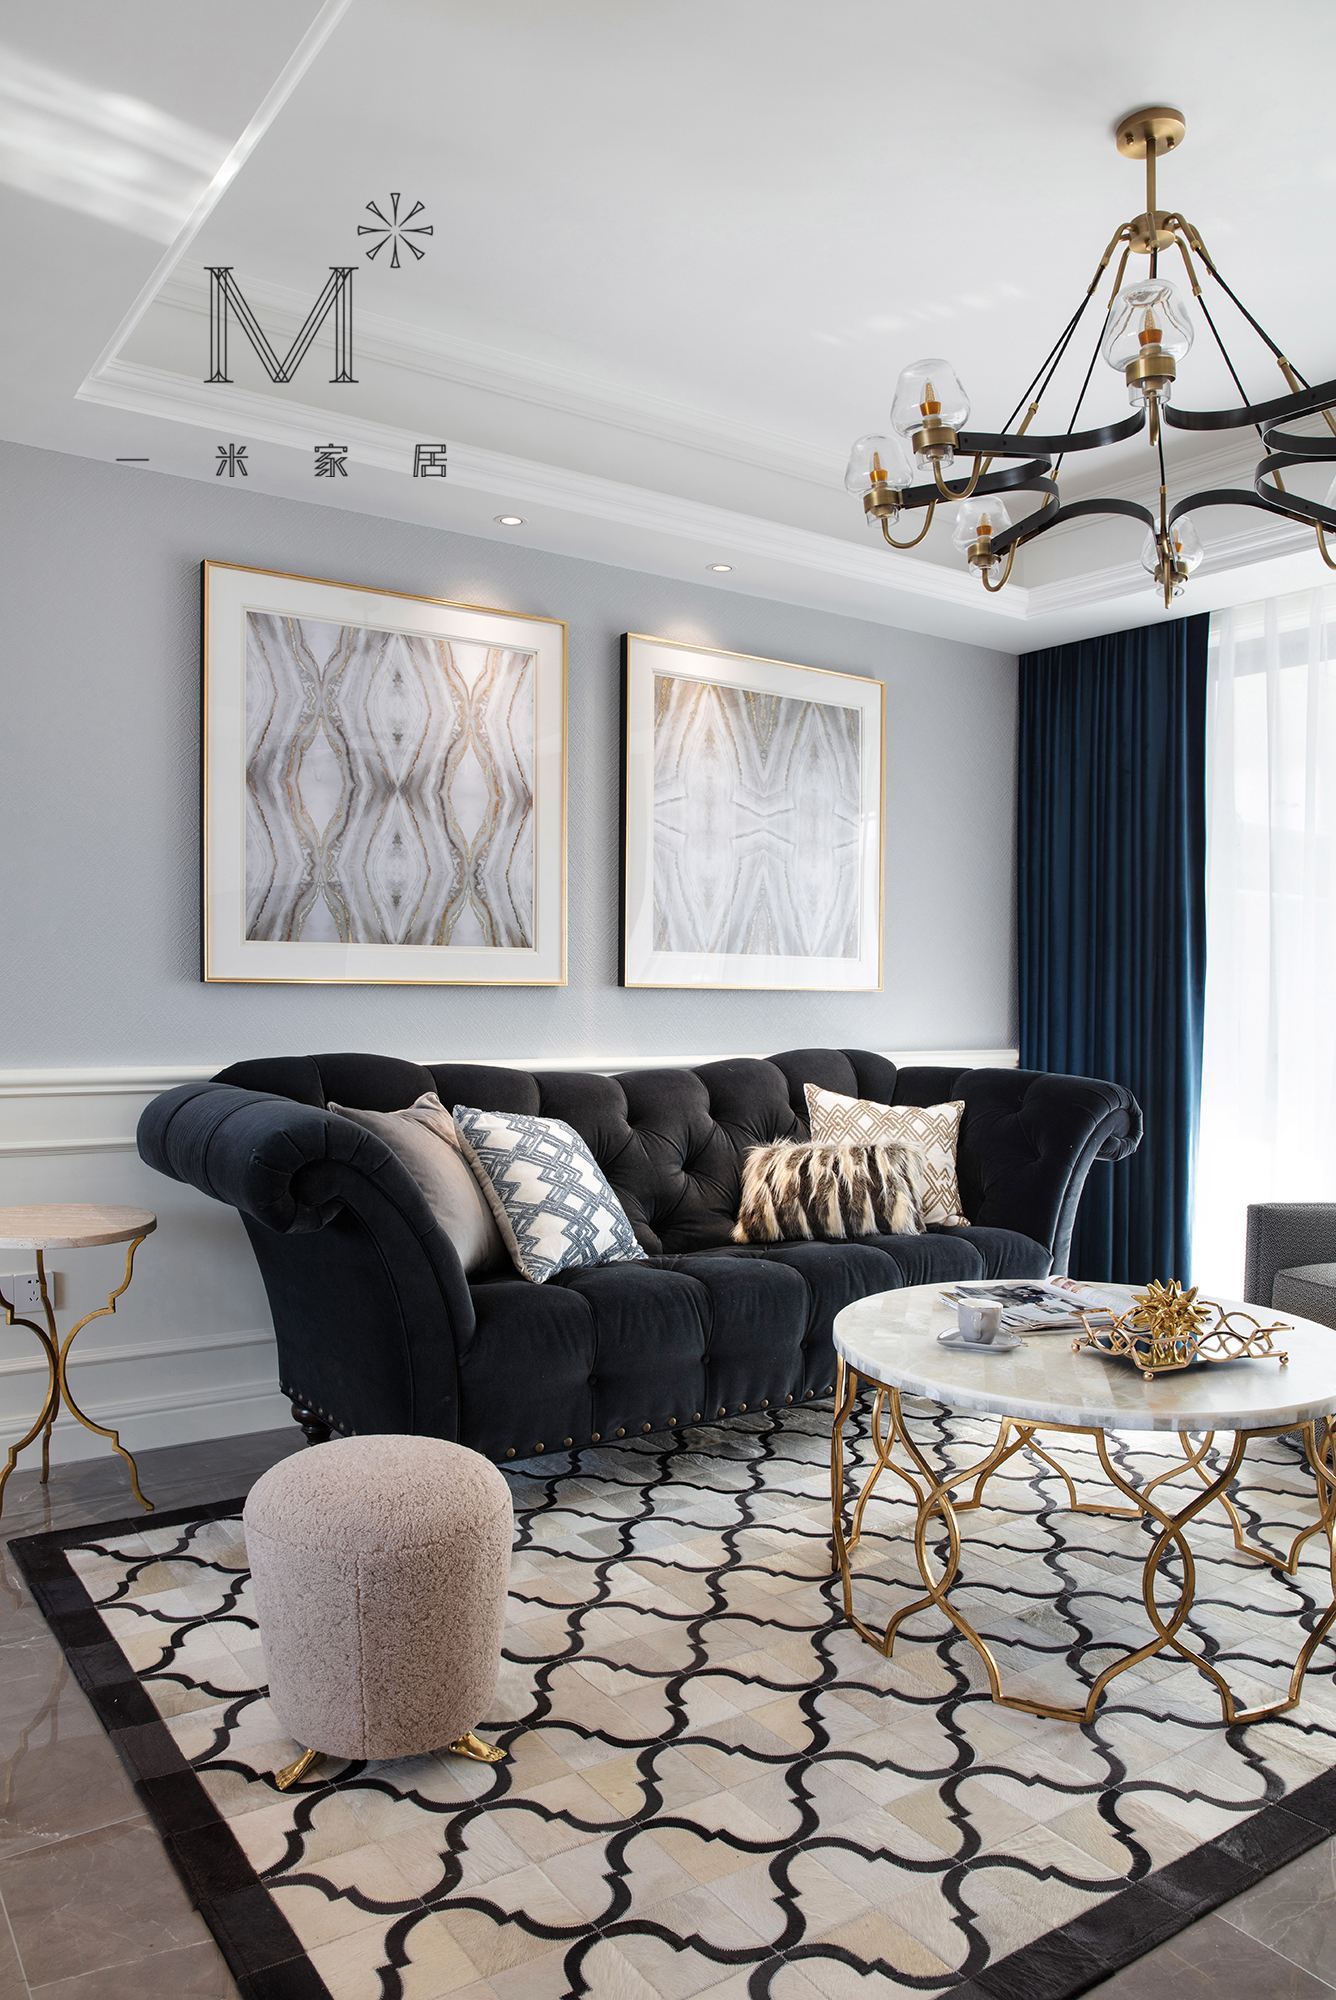 客厅窗帘1装修效果图130㎡低奢美式客厅吊灯图片美式客厅设计图片赏析